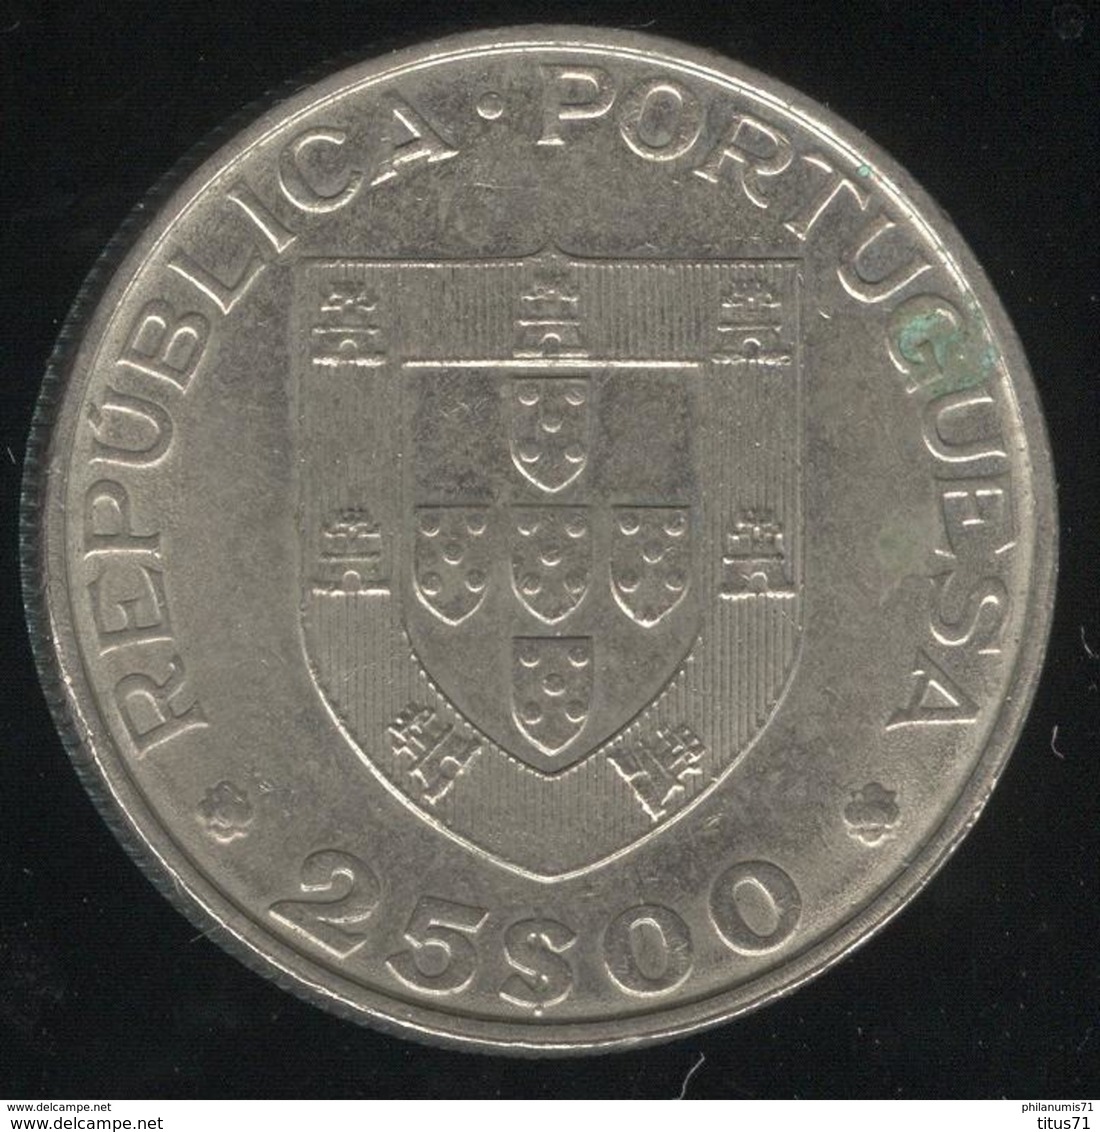 25 Escudos Portugal 1986 - L'entrée Du Portugal Dans L'Union Européenne - Portugal